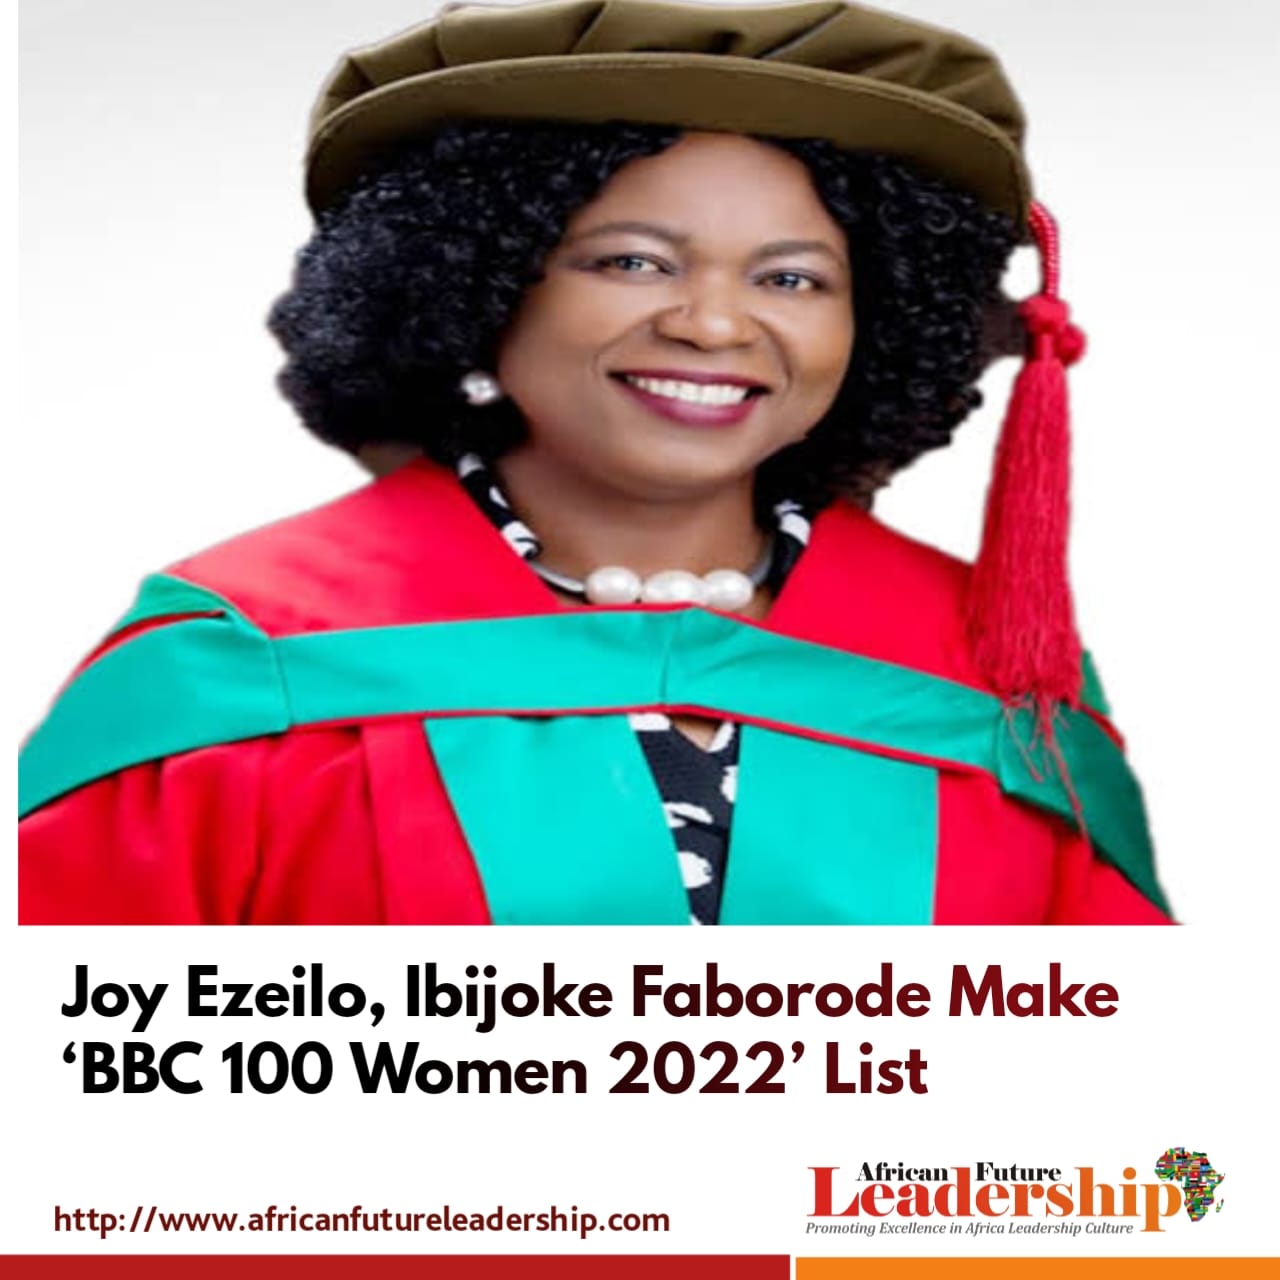 Joy Ezeilo, Ibijoke Faborode Make ‘BBC 100 Women 2022’ List